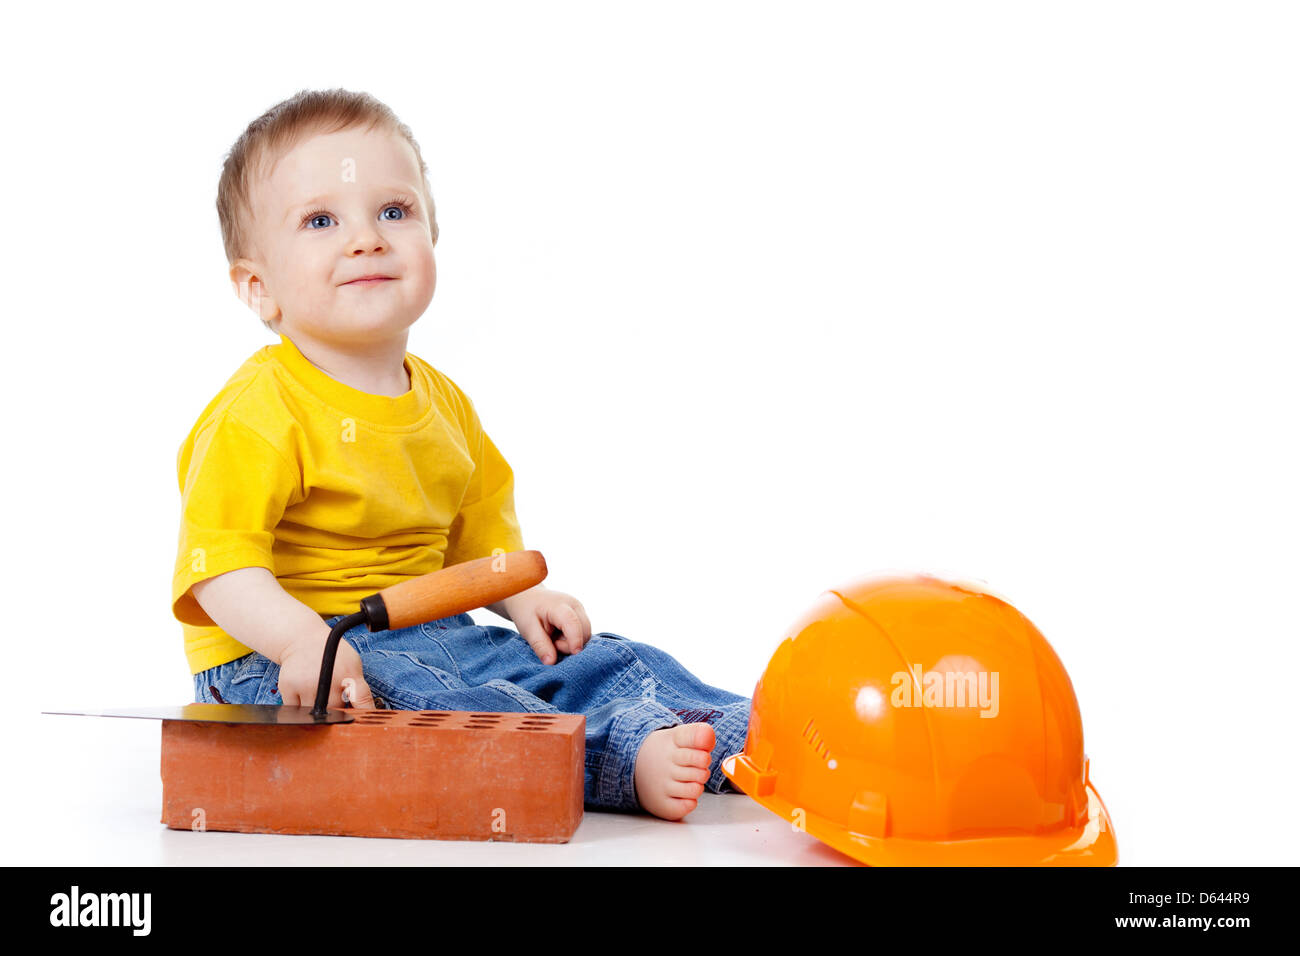 Smiling enfant avec casque et des outils de construction Banque D'Images